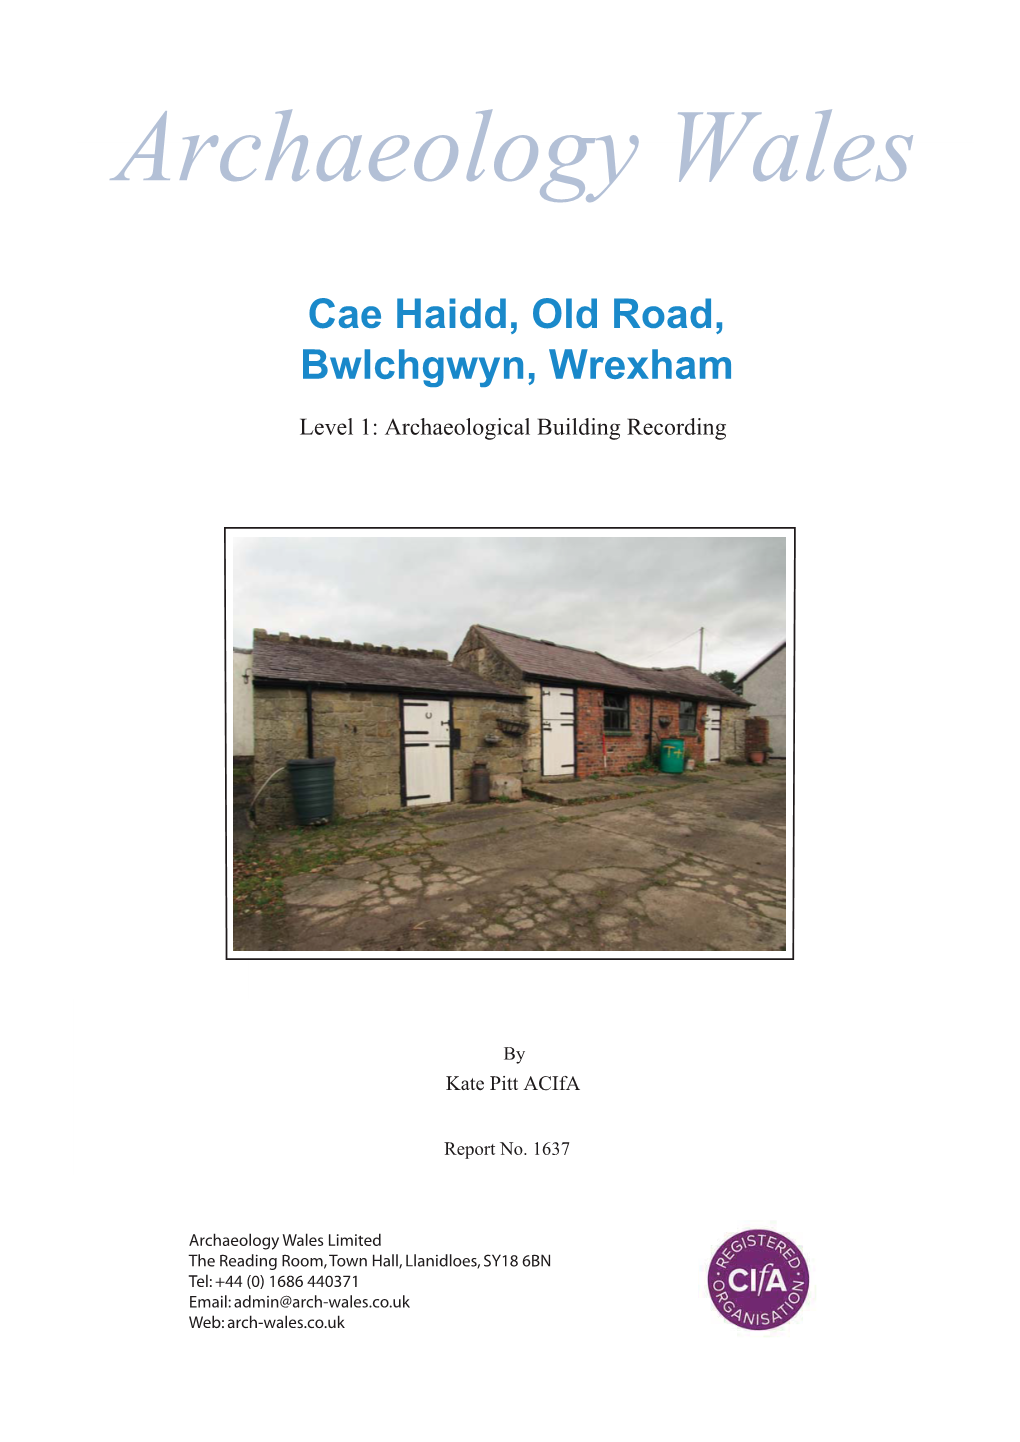 Cae Haidd, Old Road, Archaeology Wales Bwlchgwyn, Wrexham